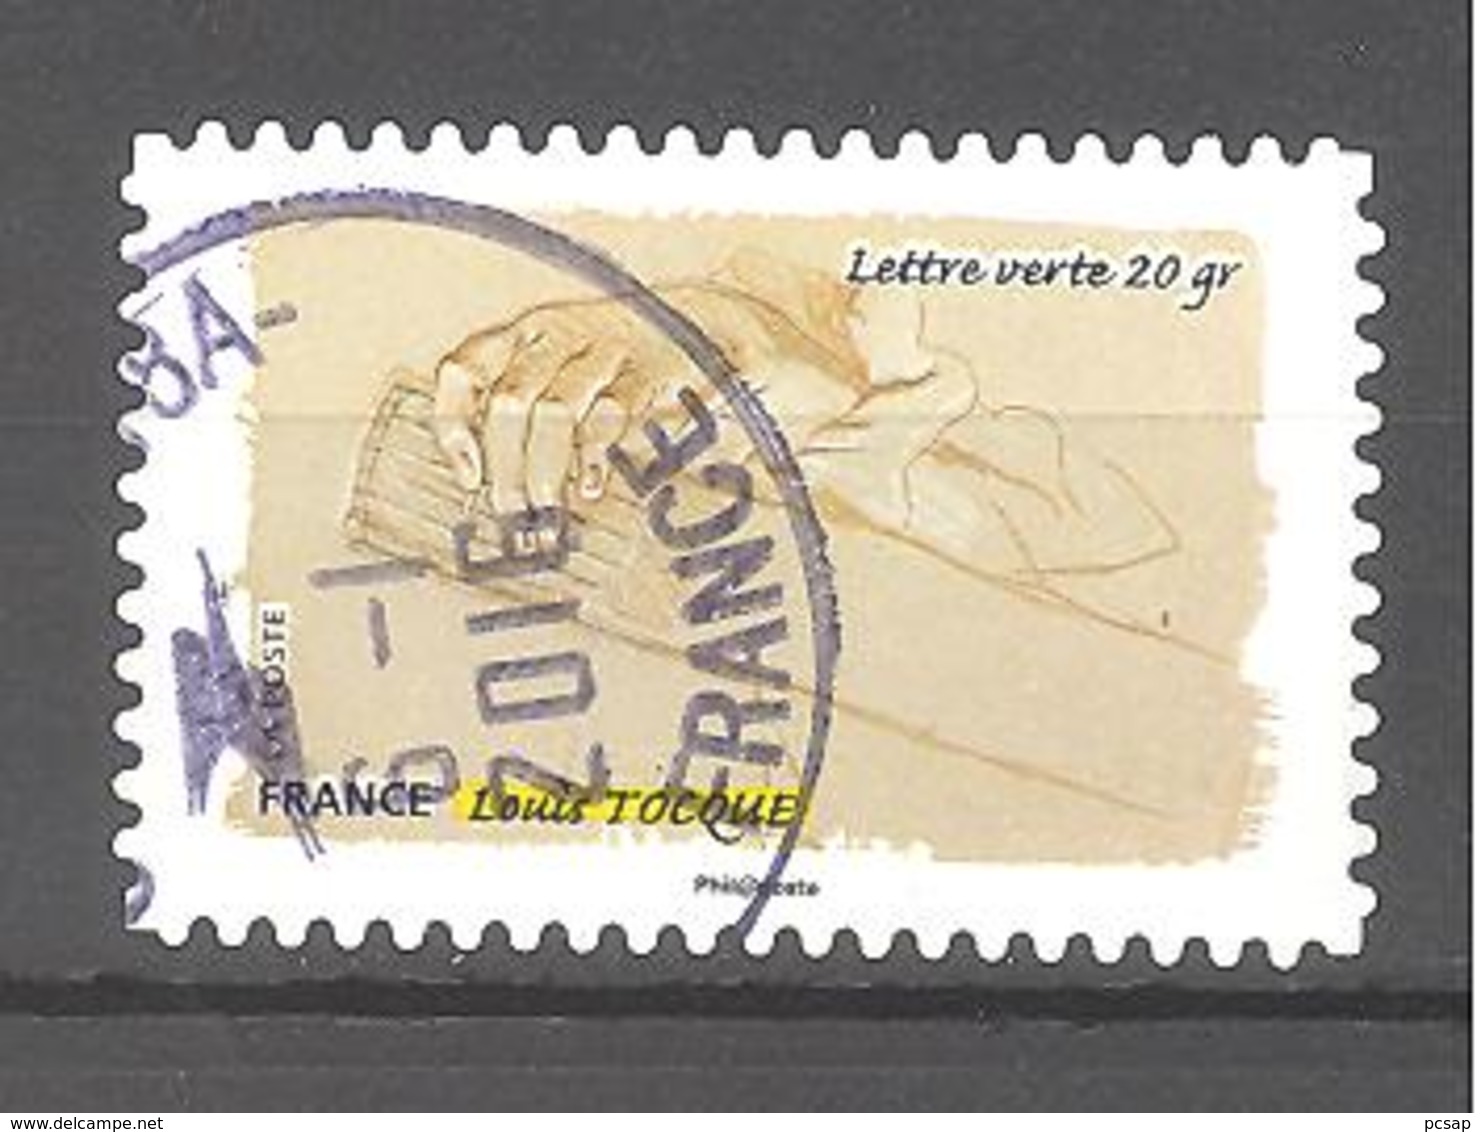 France Autoadhésif Oblitéré N°1092 (Le Toucher) (cachet Rond) - Used Stamps